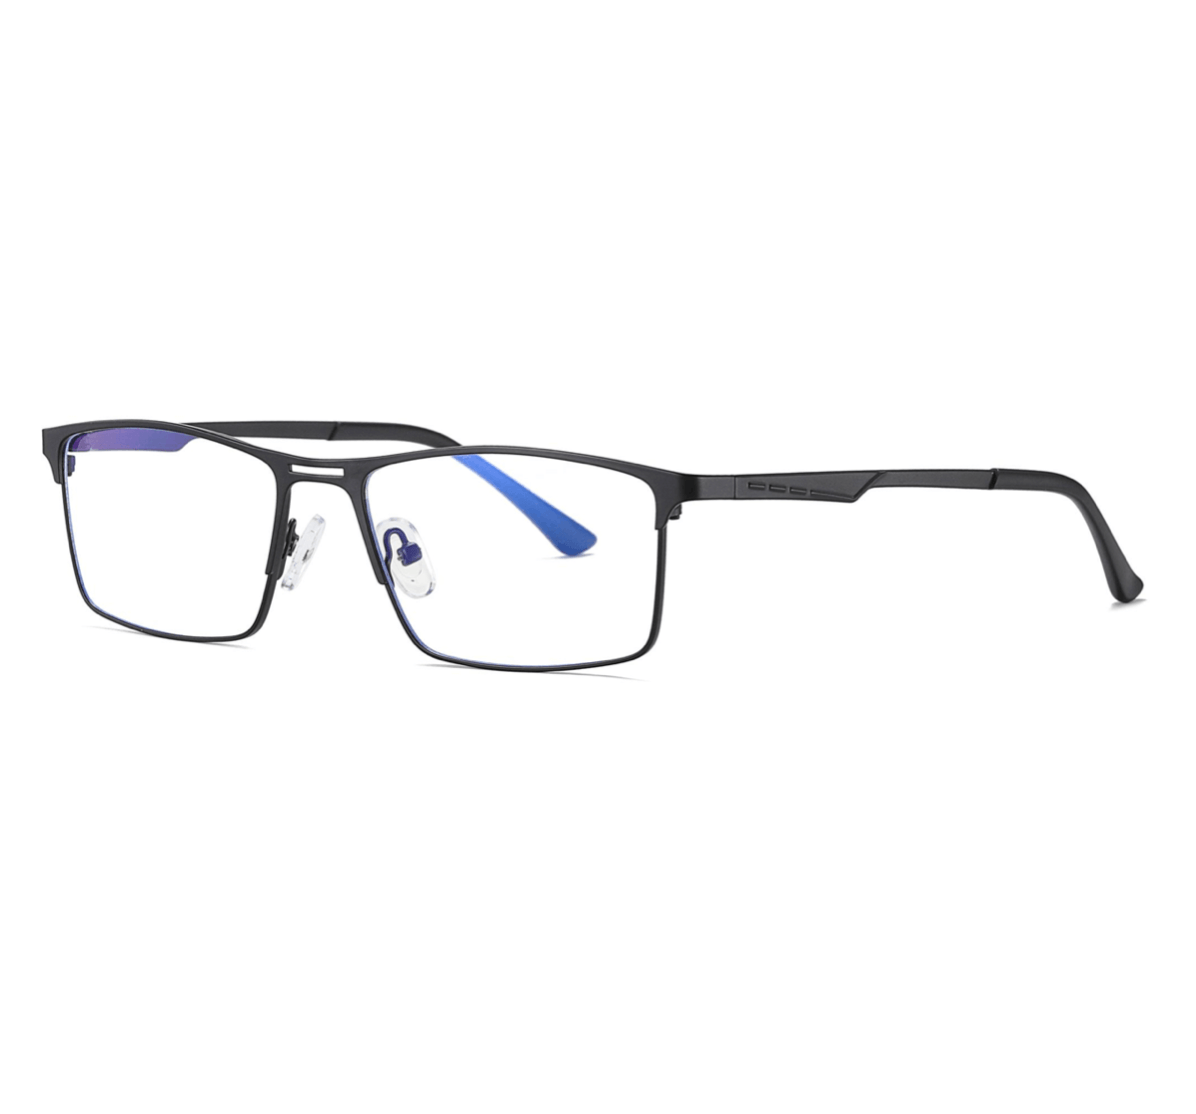 square metal black blue light glasses manufacturer, blue light glasses supplier, blue light glasses bulk, custom blue light glasses